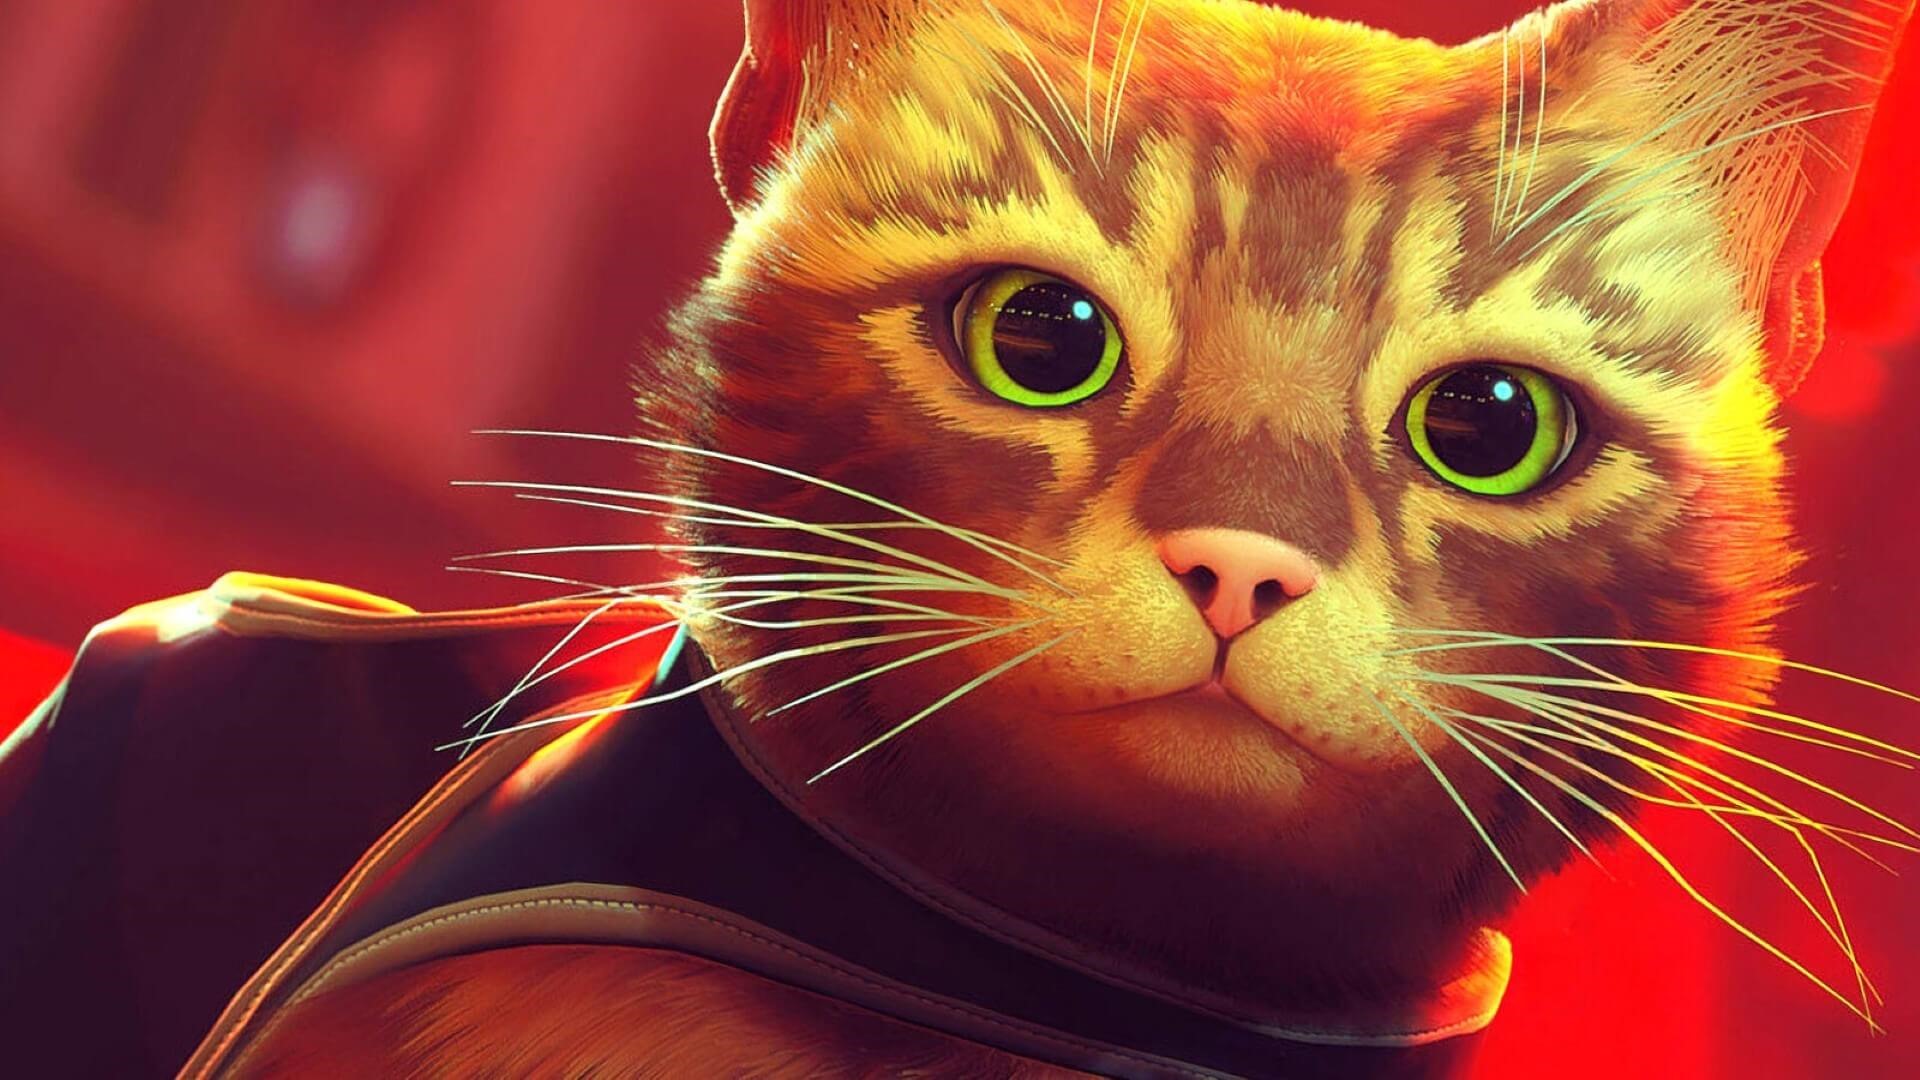 Conheça os gatos da vida real nos bastidores do jogo Stray